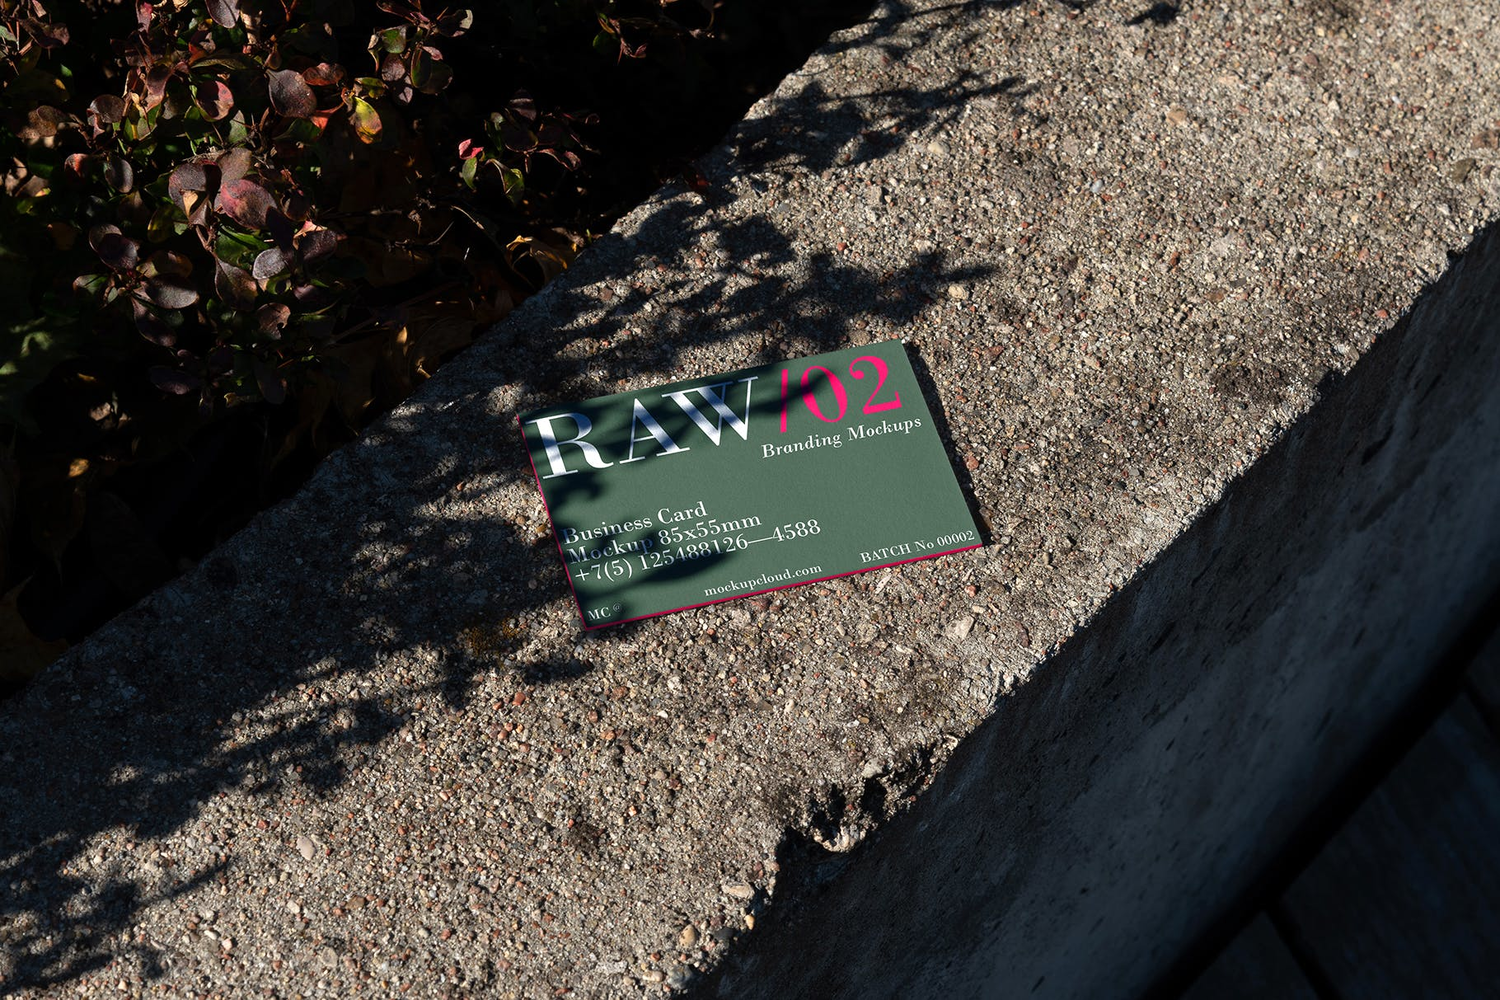 4746 16款质感光影工业风名片设计作品贴图ps样机素材场景展示效果模板 Raw Business Cards Mockups Vol 2@GOOODME.COM